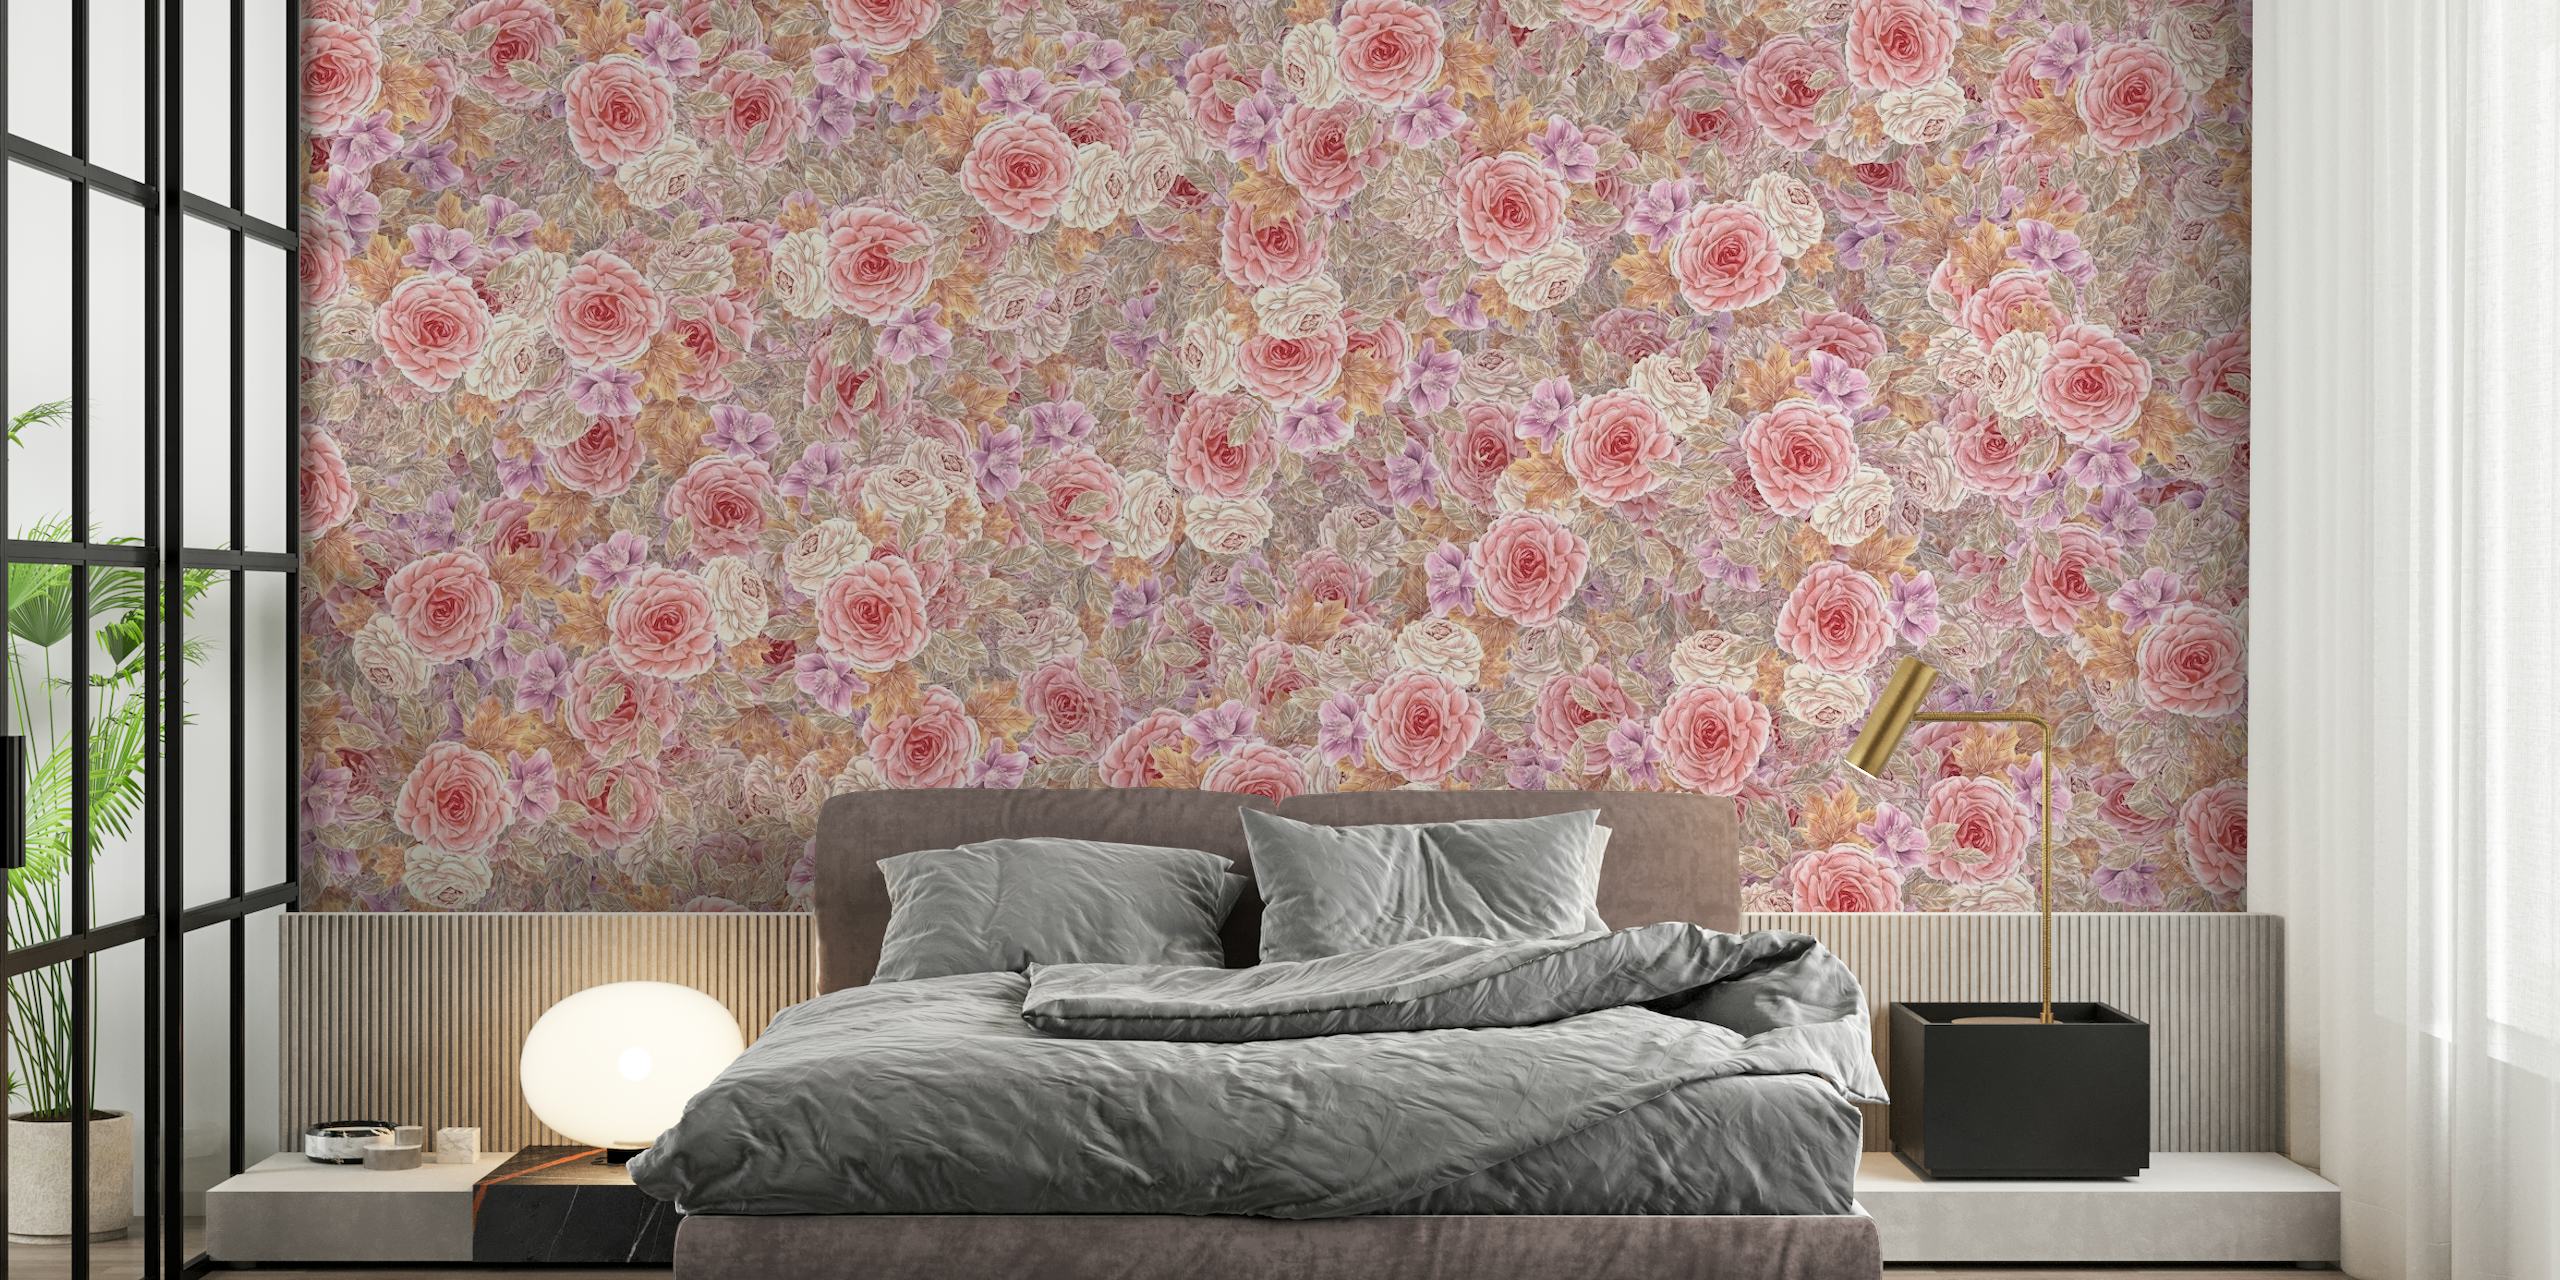 Rosas de chá aquarela em rosa, laranja, lilás e cinza em um mural de parede